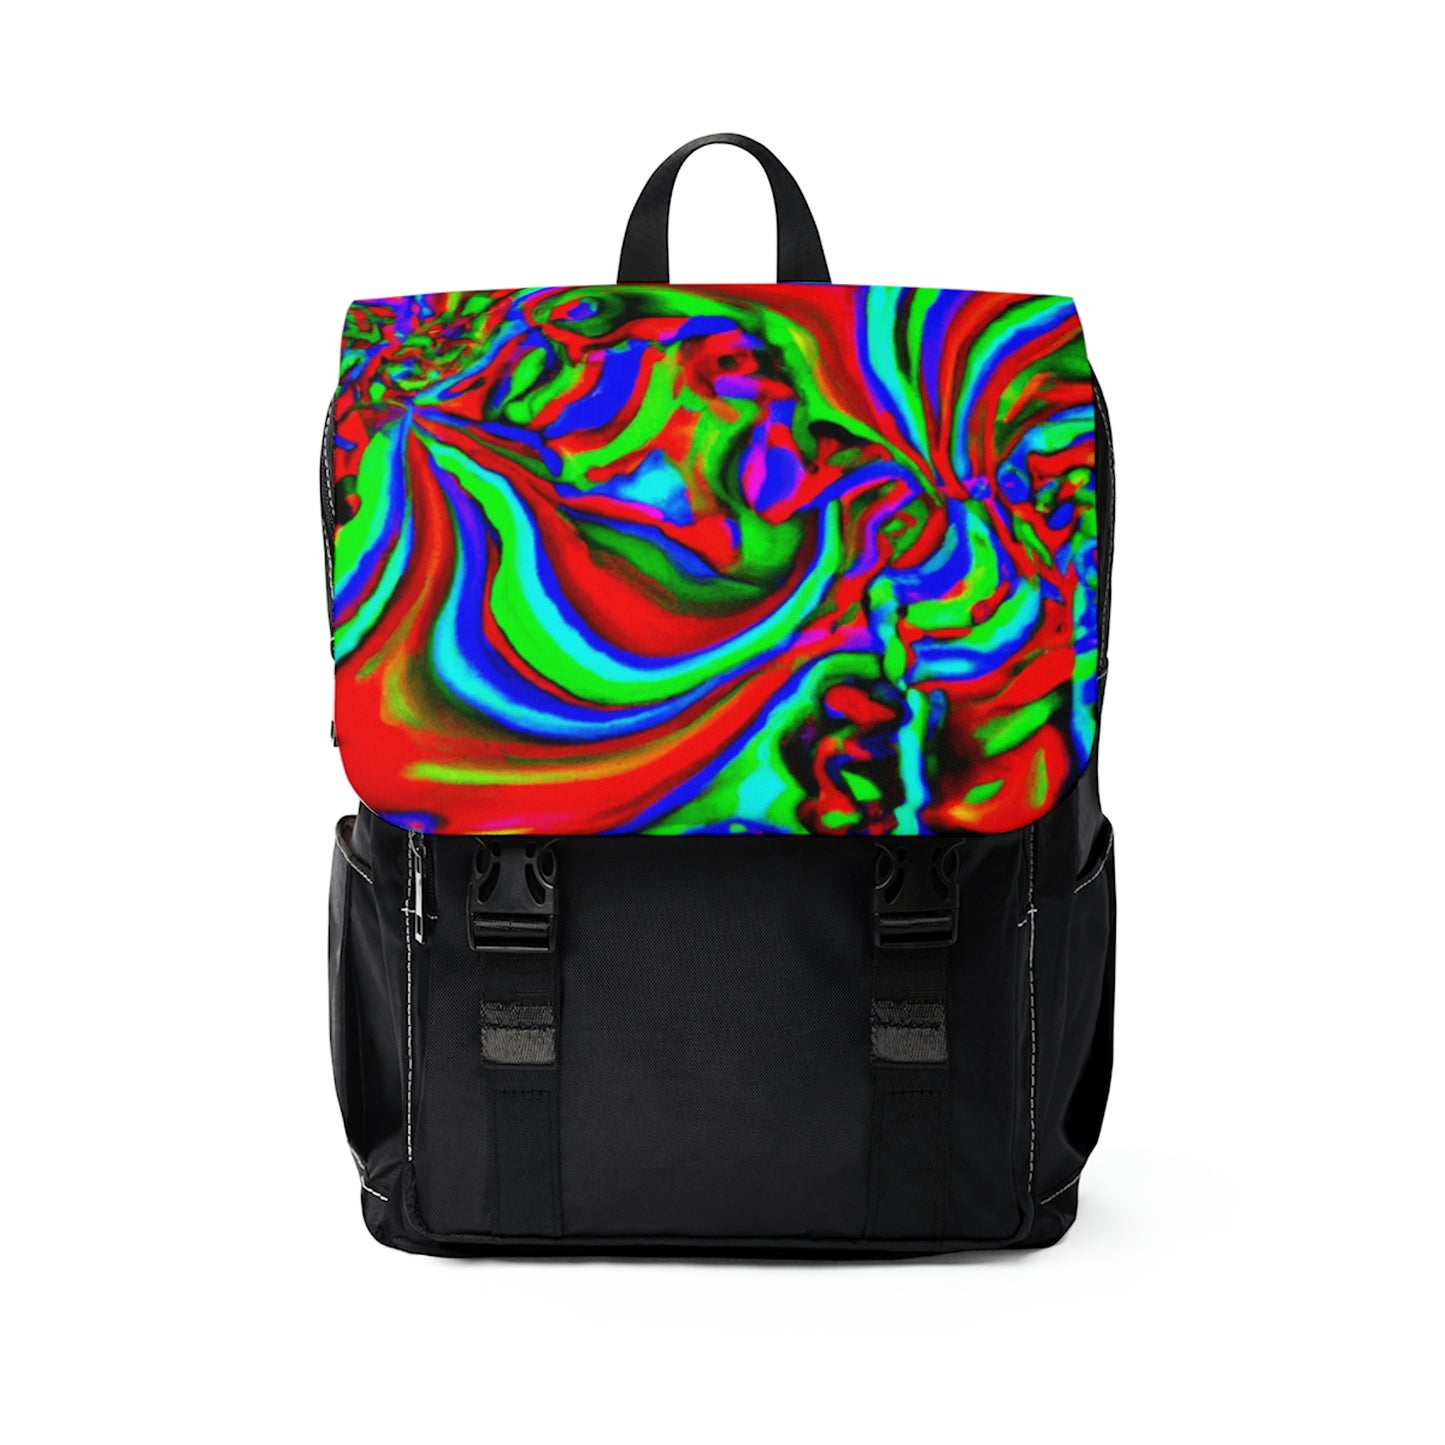 Remyliére - Psychedelic Shoulder Travel Backpack Bag